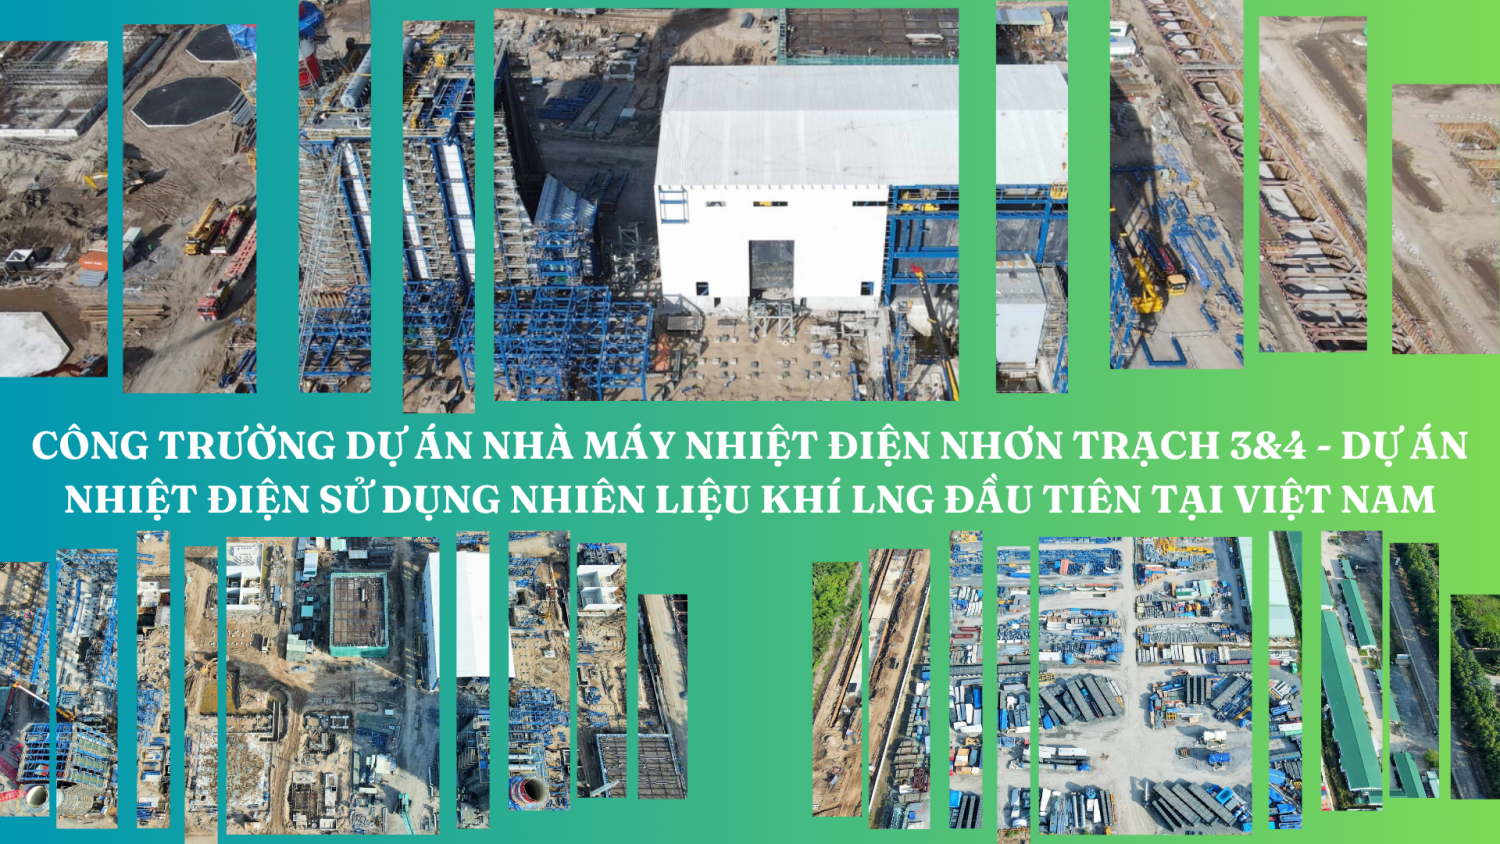 S&P Global: Dự thảo chính sách của Việt Nam về khí đốt/LNG và năng lượng tái tạo cho thấy nỗ lực cải cách thị trường